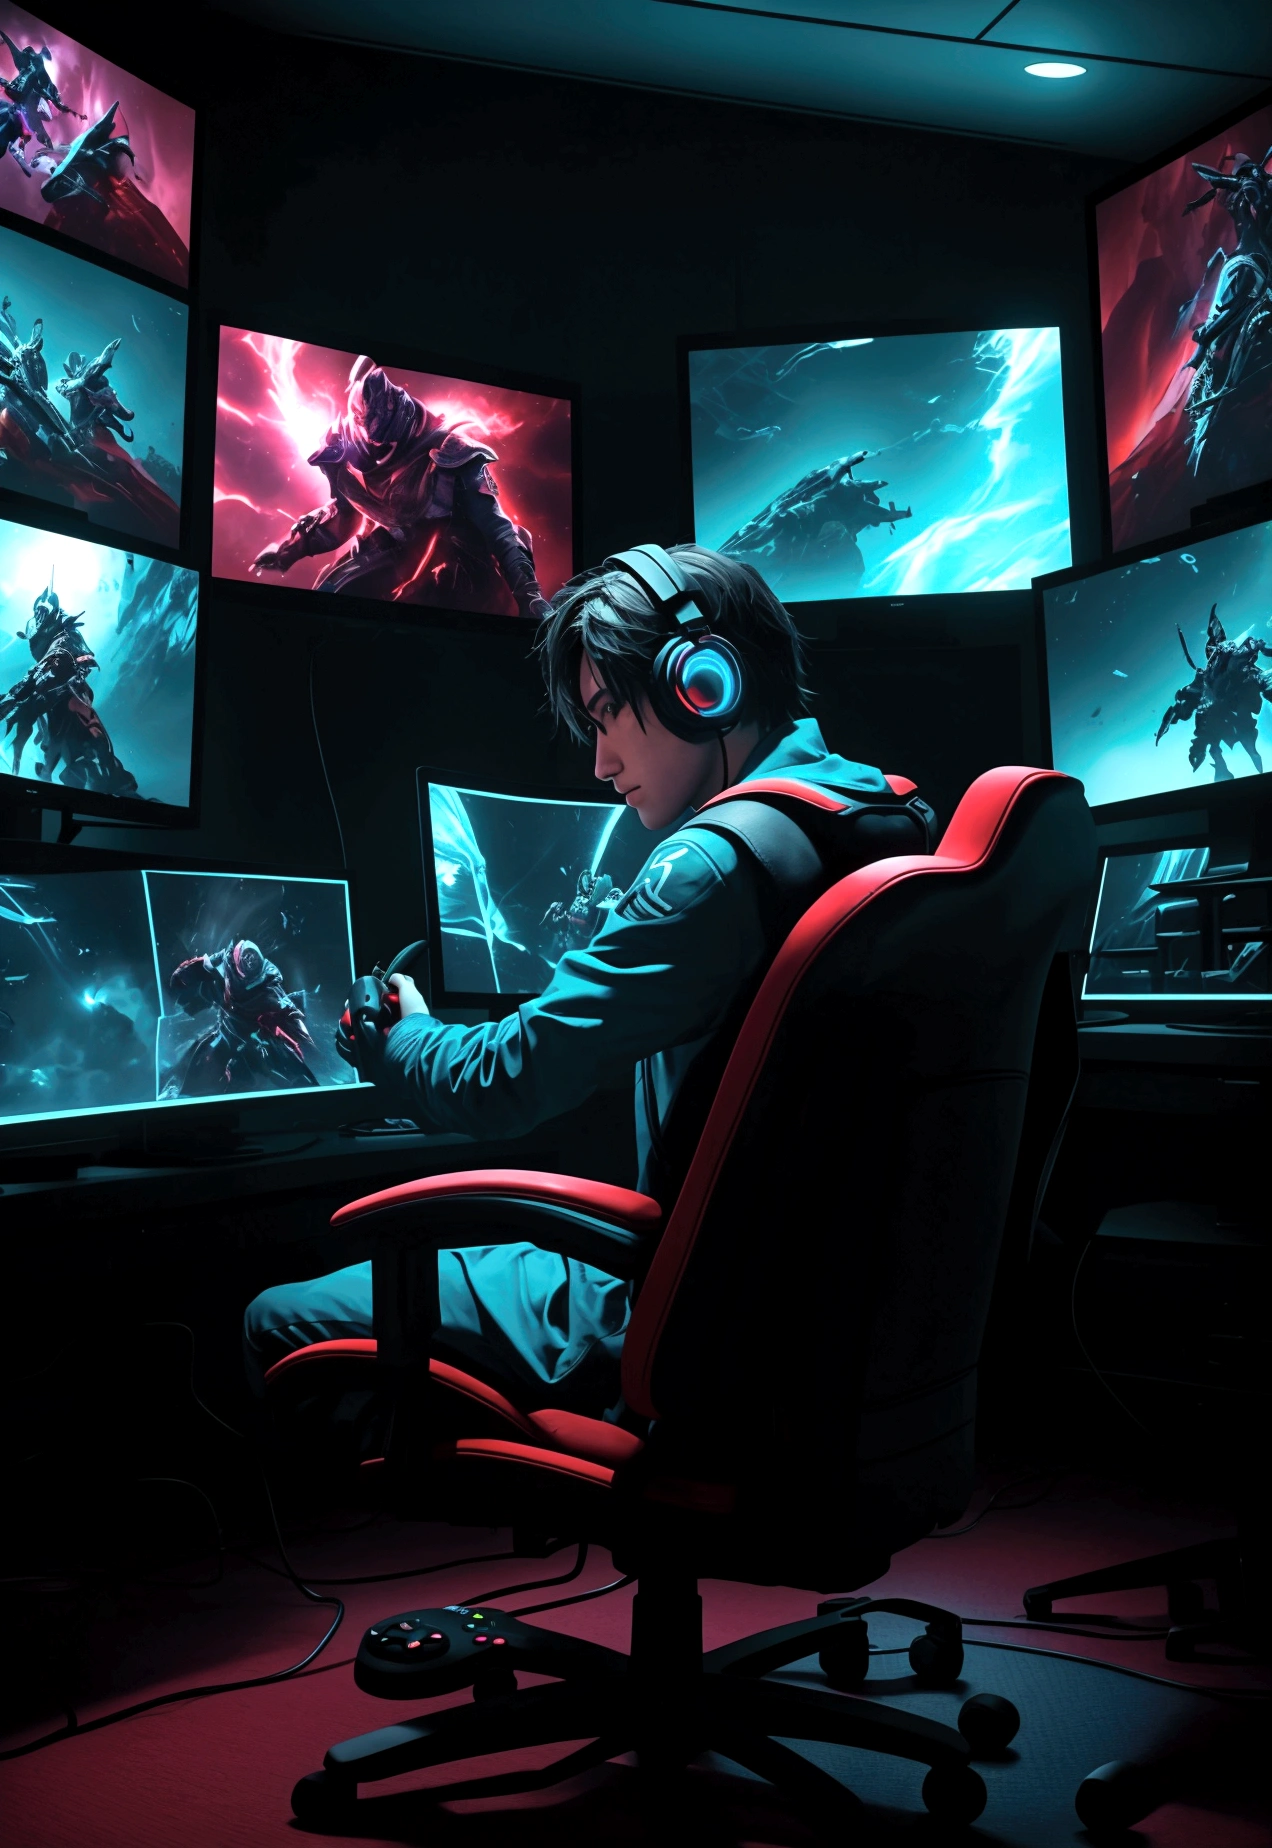 Una imagen vibrante de un jugador con un controlador en la mano., frente a varias pantallas con diferentes juegos.

Elementos gráficos que se asemejan a consolas y controles..